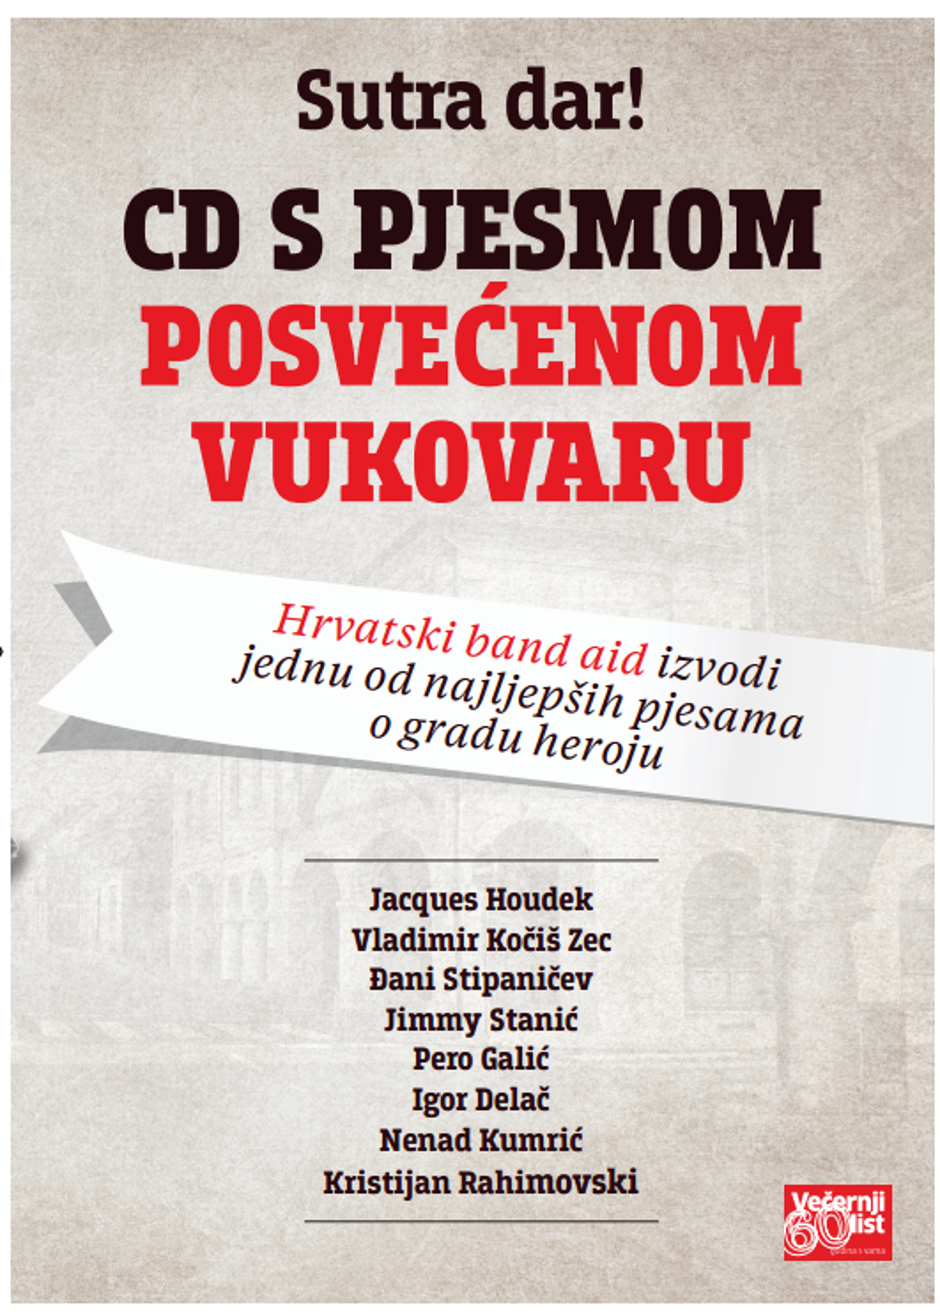 CD s pjesmom Vukovaru